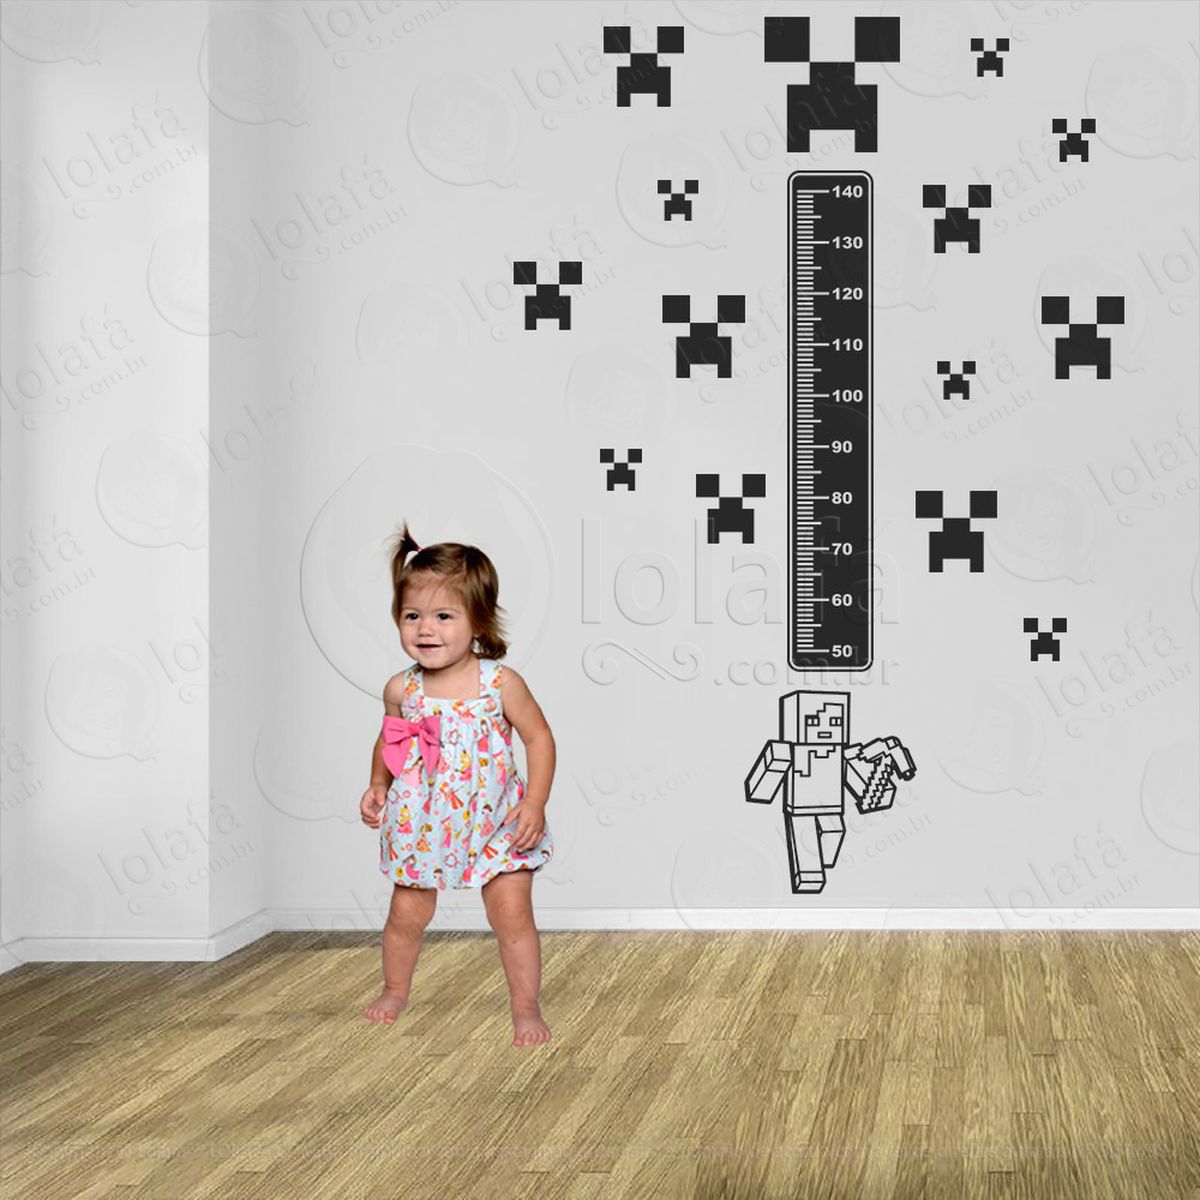 minecraft e minecraft adesivo régua de crescimento infantil, medidor de altura para quarto, porta e parede - mod:730